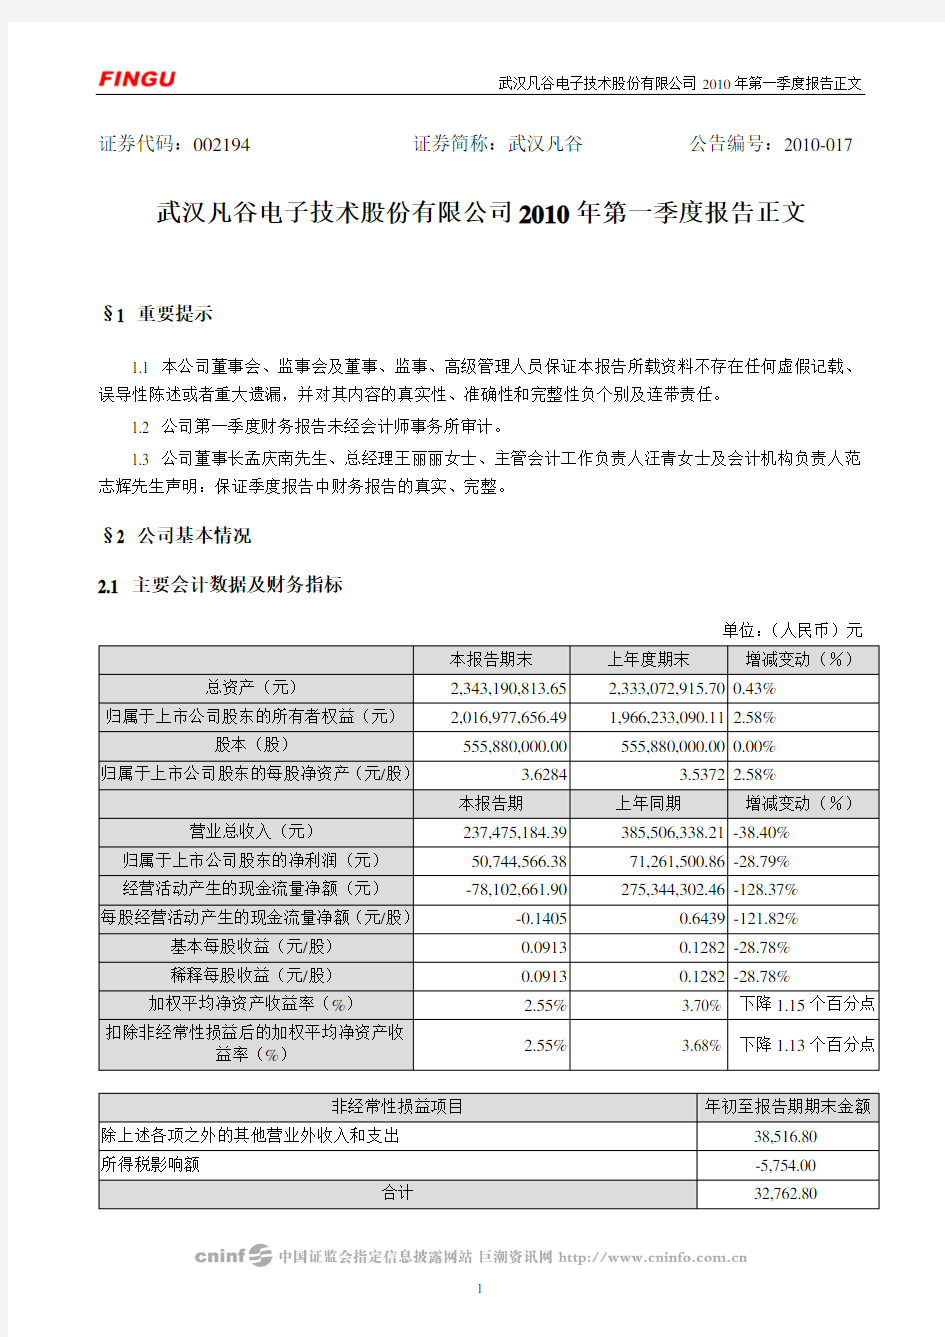 武汉凡谷电子技术股份有限公司2010年第一季度报告正文